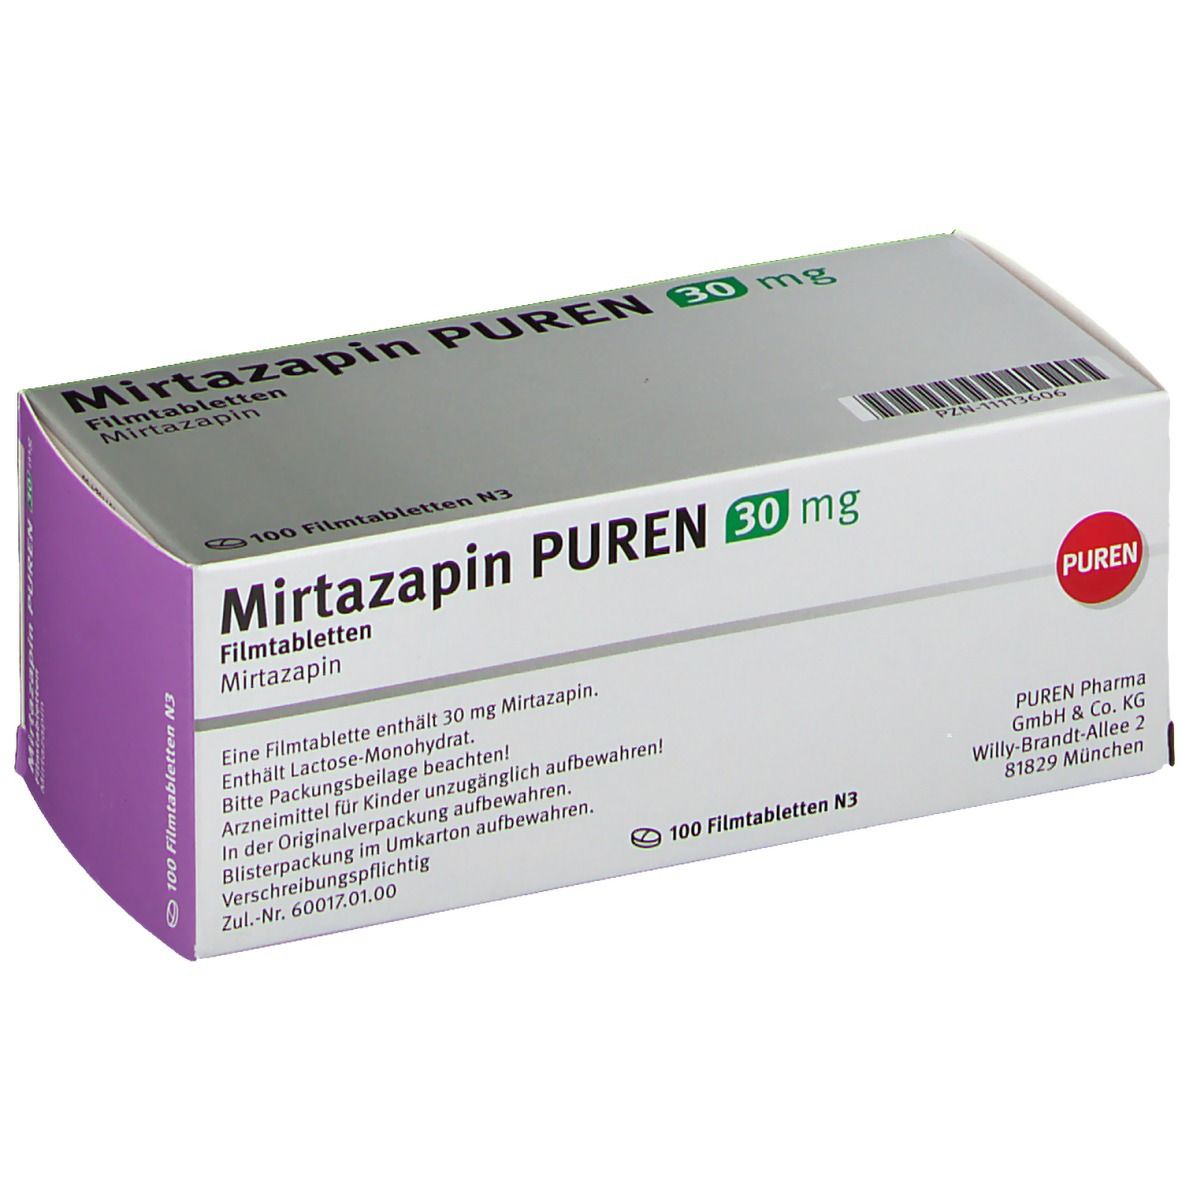 Mirtazapin PUREN 30 mg